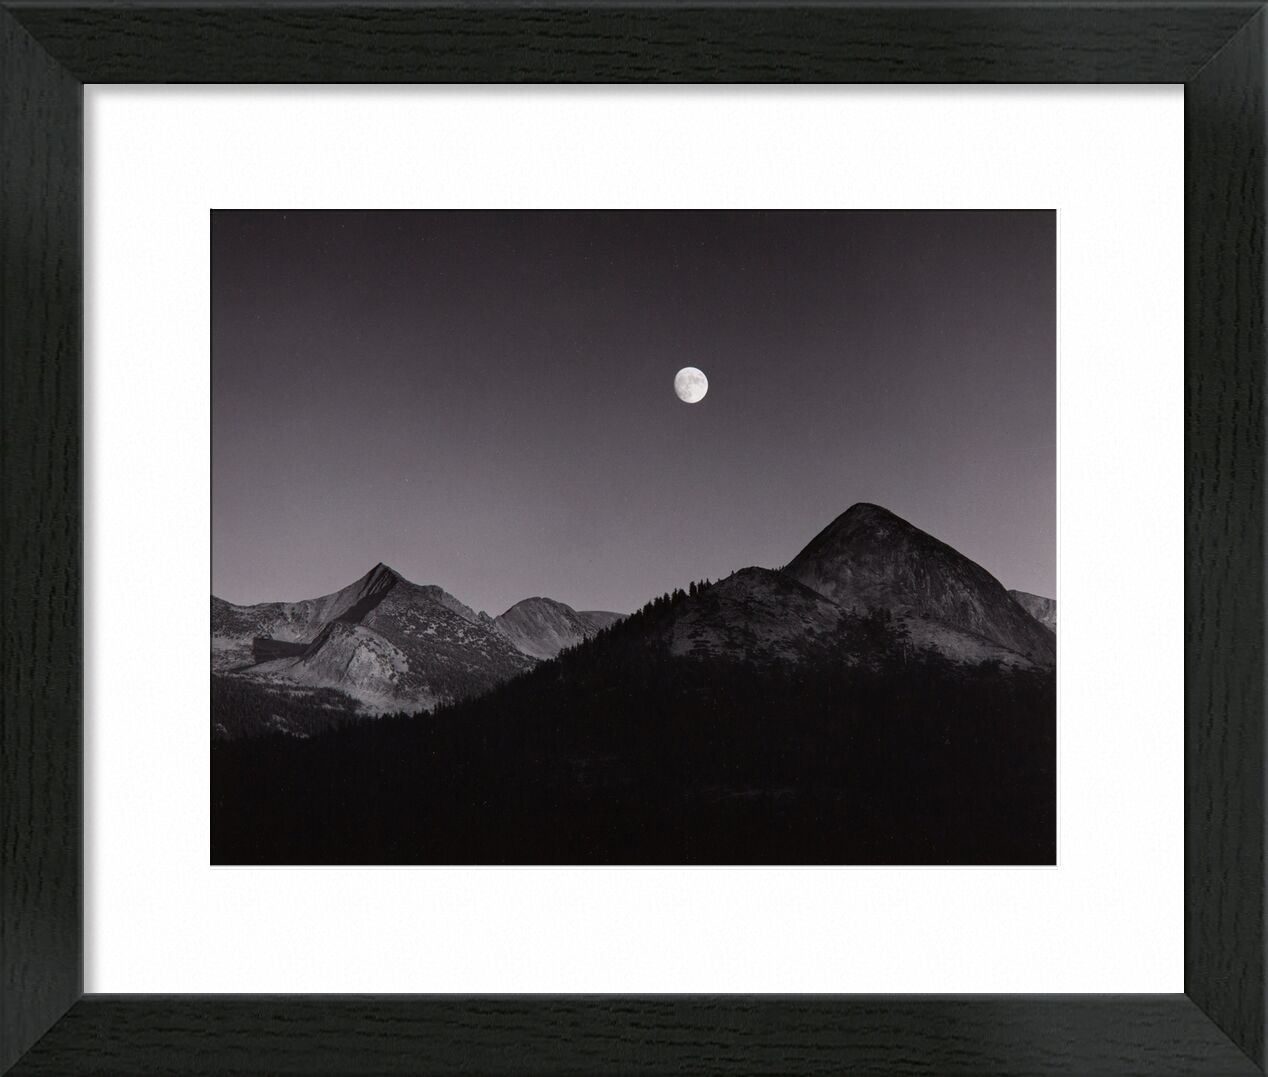 Mondaufgang vom Glacier Point, Yosemite National Park, Kalifornien, 1939 - Ansel Adams von Bildende Kunst, Prodi Art, adams, Berge, Mond, Himmel, Sterne, ANSEL ADAMS